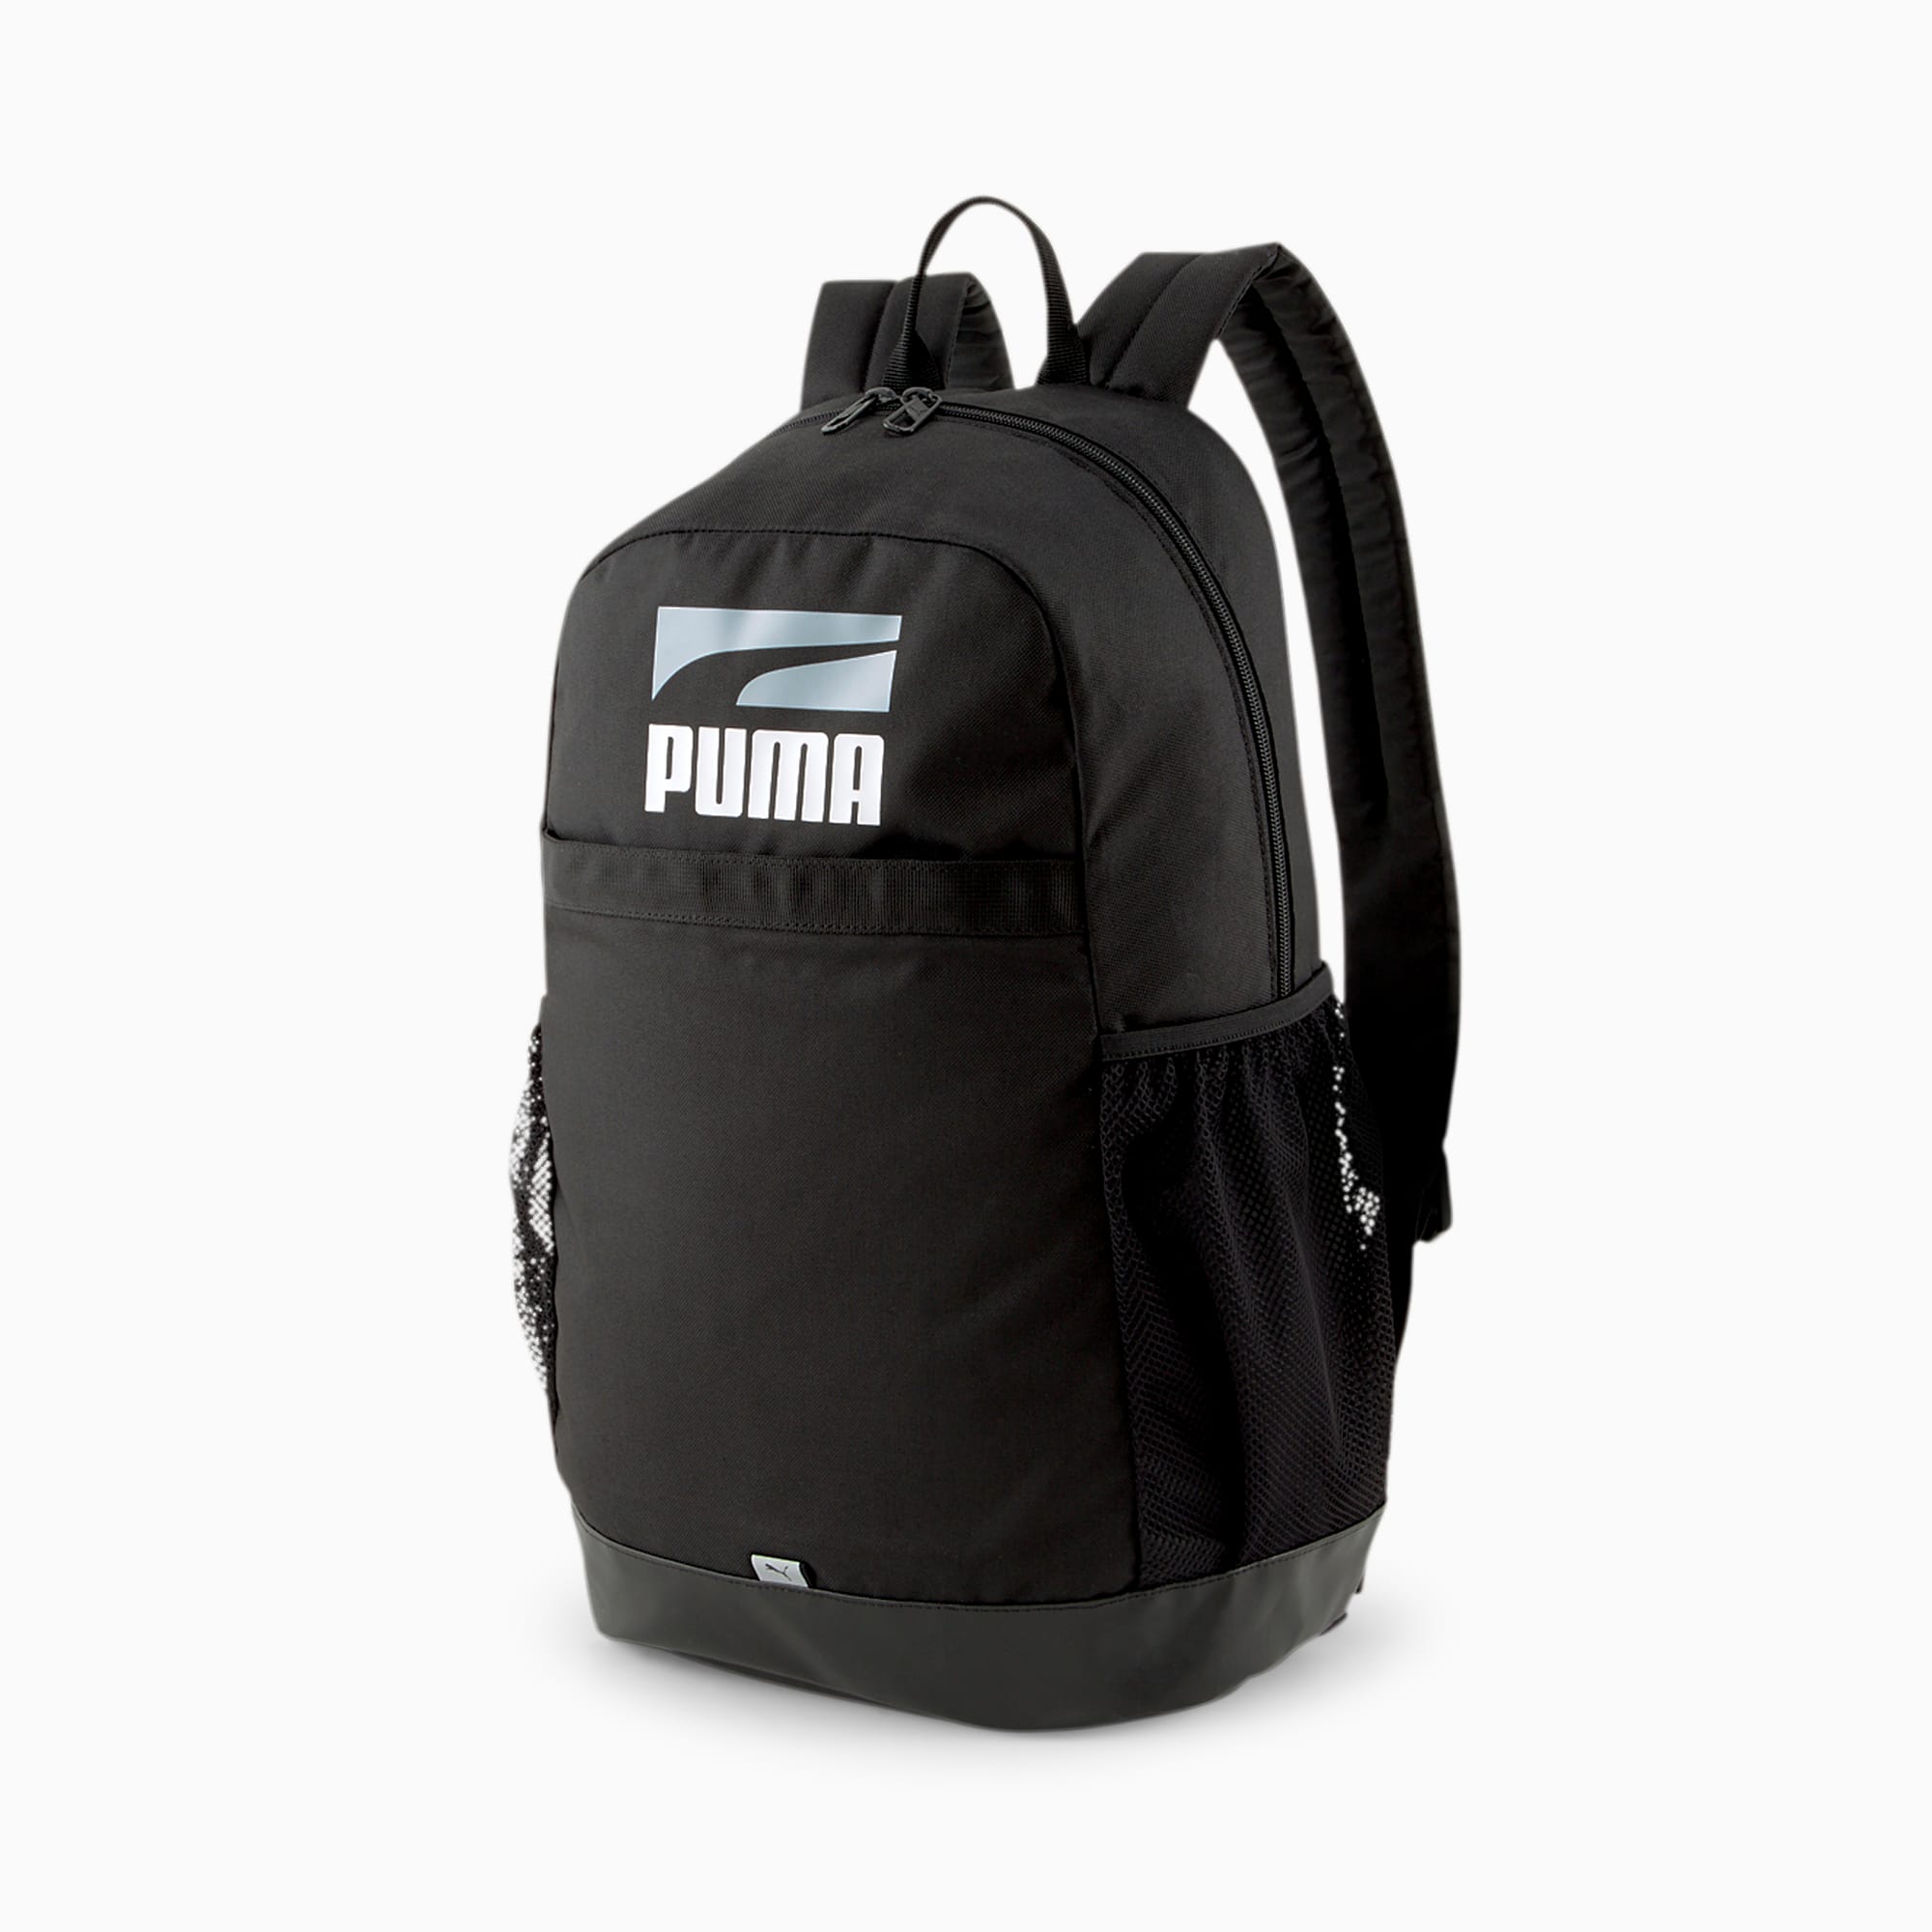 Plus II Backpack PUMA 